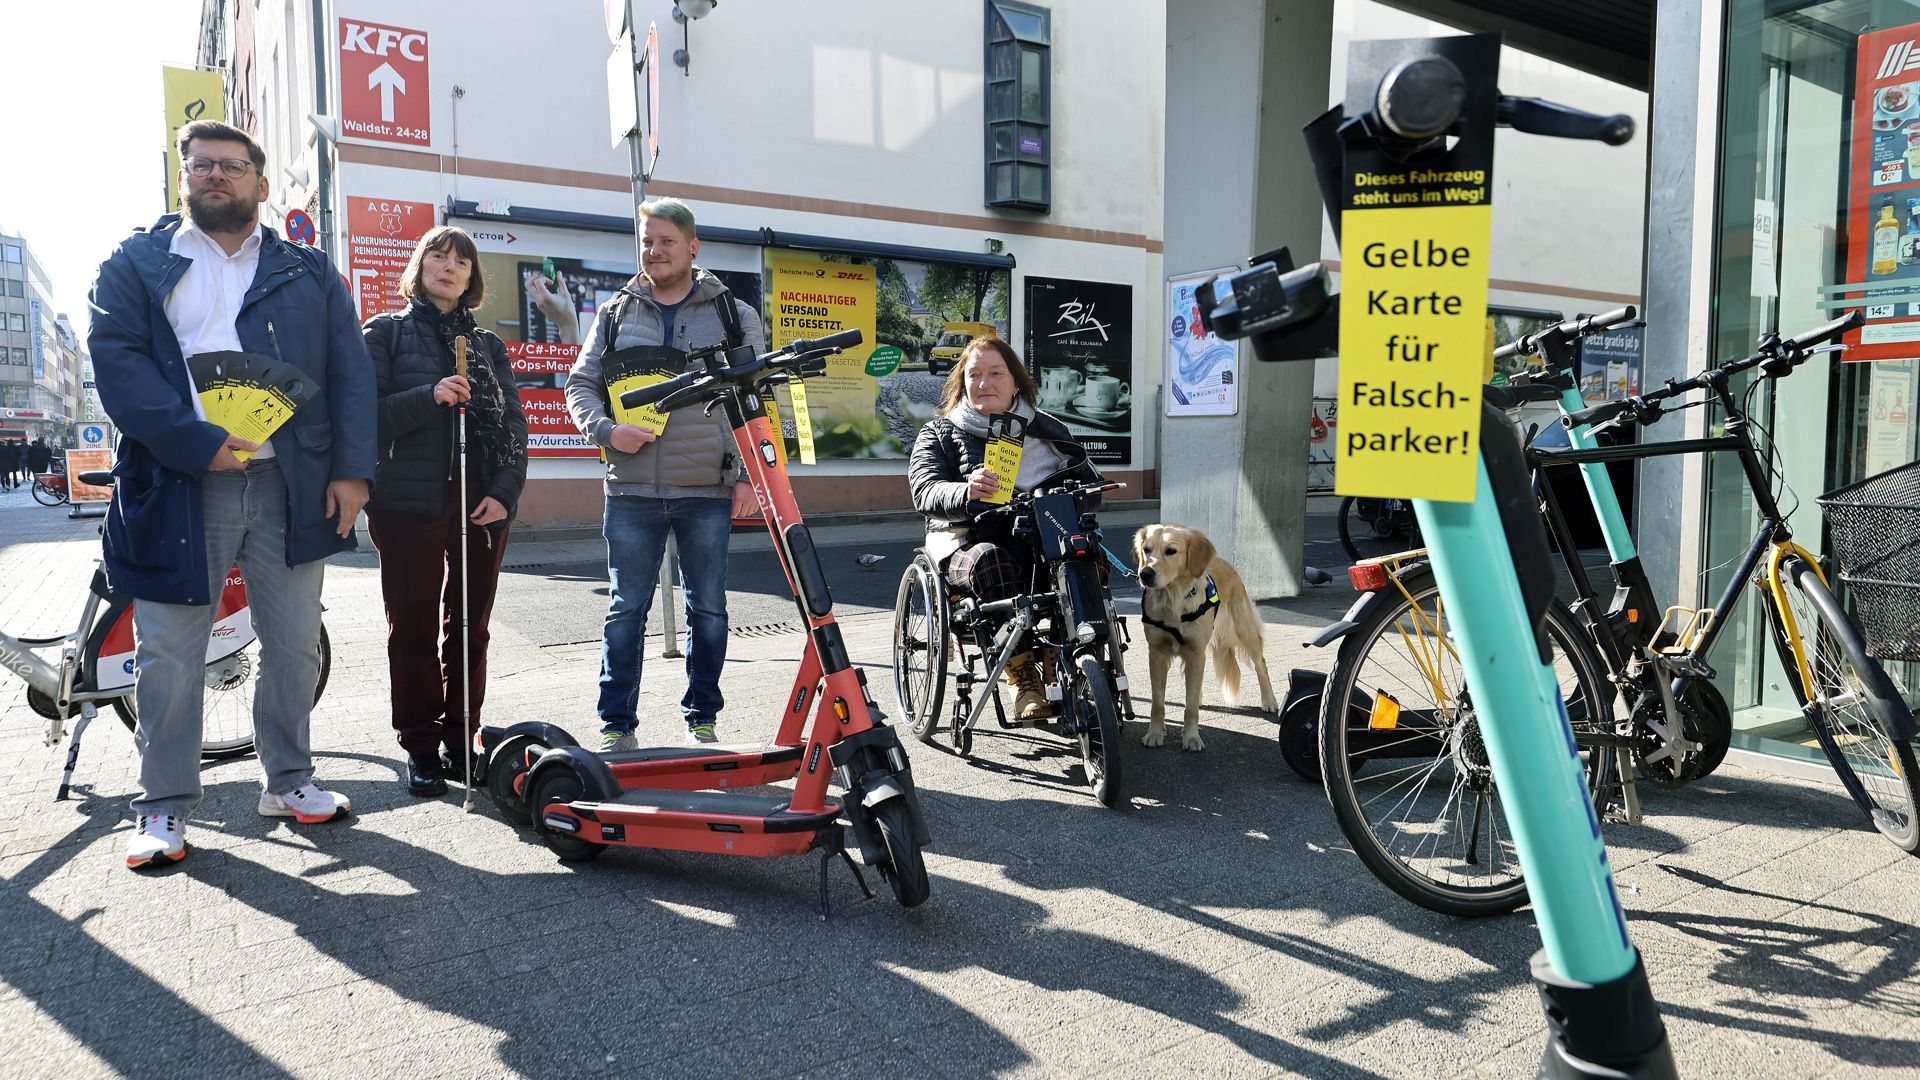 Vier Menschen halten eine schwarz-gelbe Karte in der Hand. Diese Karte mit der Aufschrift „Gelbe Karte für Falschparker!“ hängt auch am Lenker eines E-Scooters.